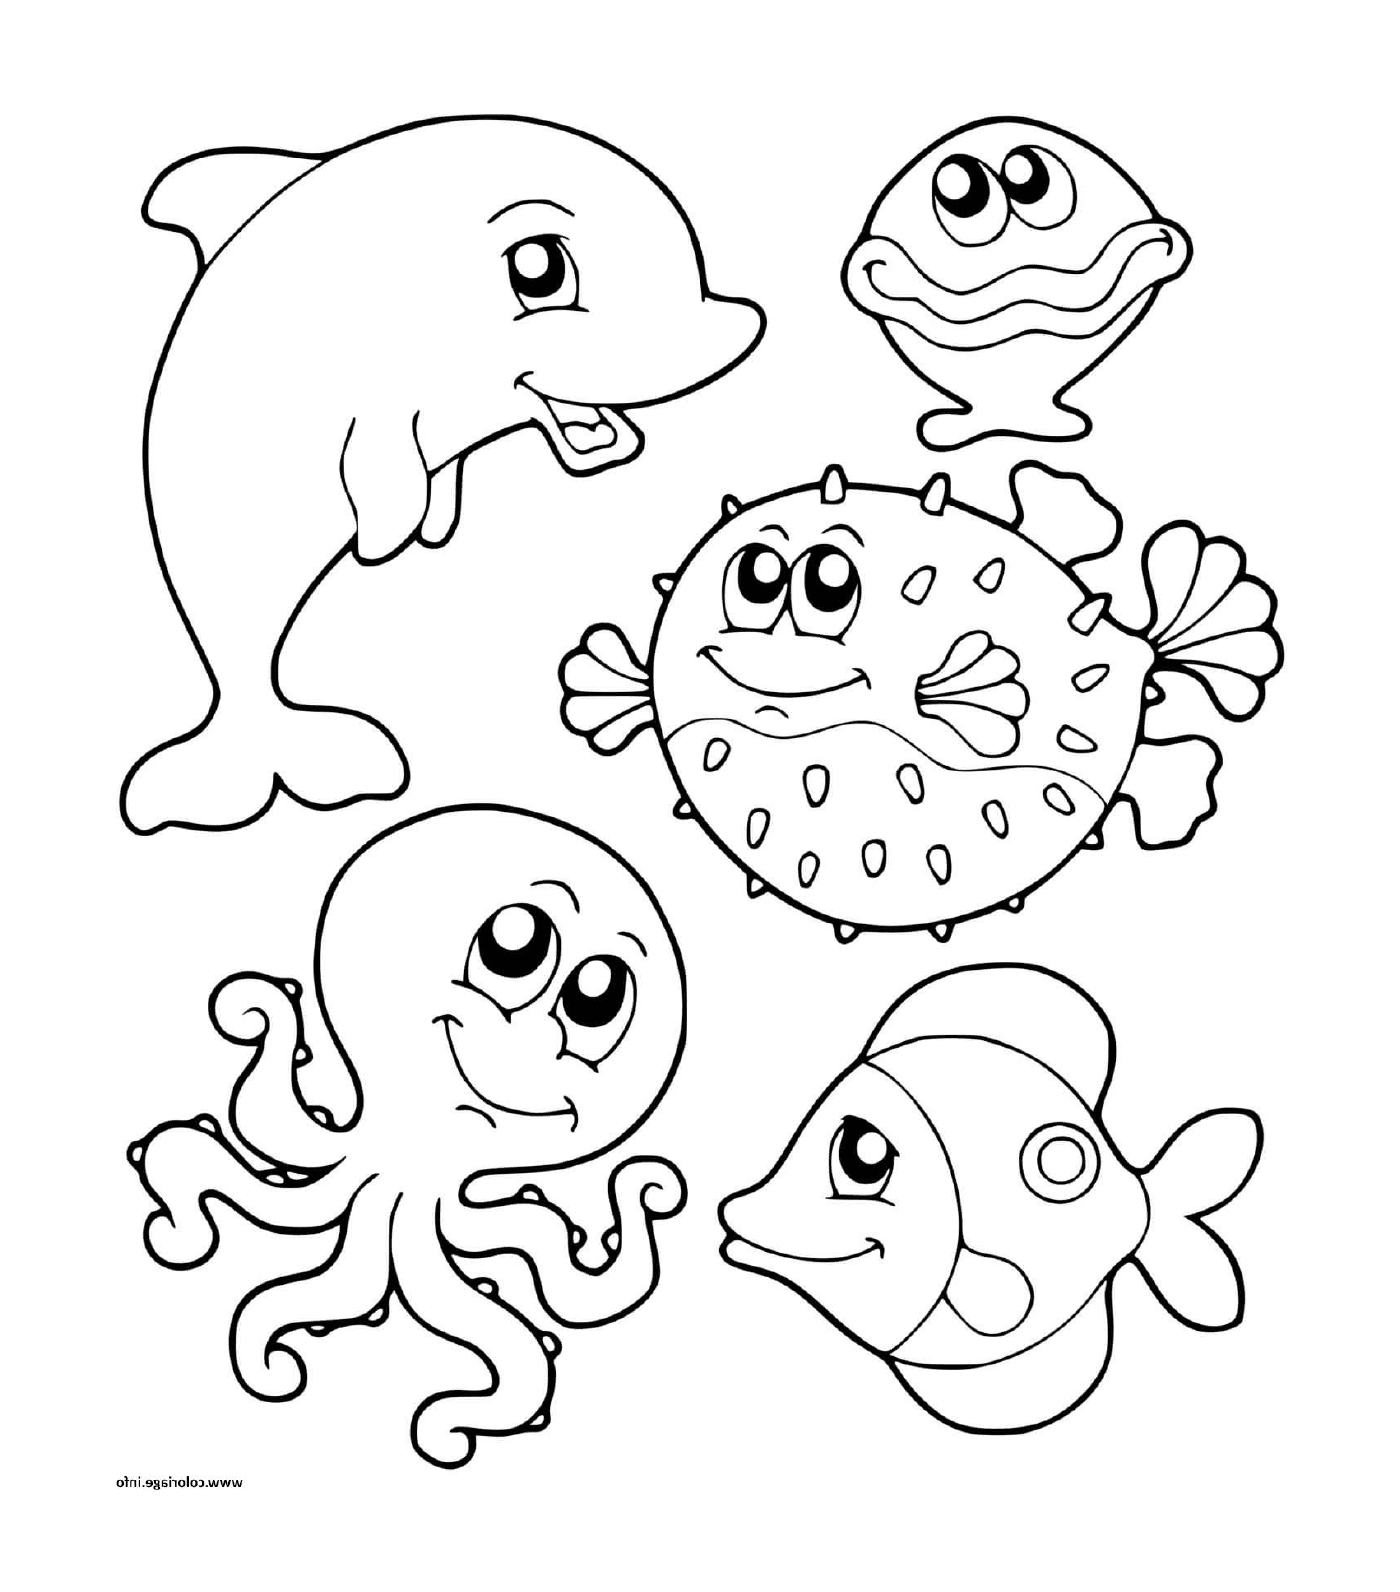  un gruppo di animali marini nell'acqua 